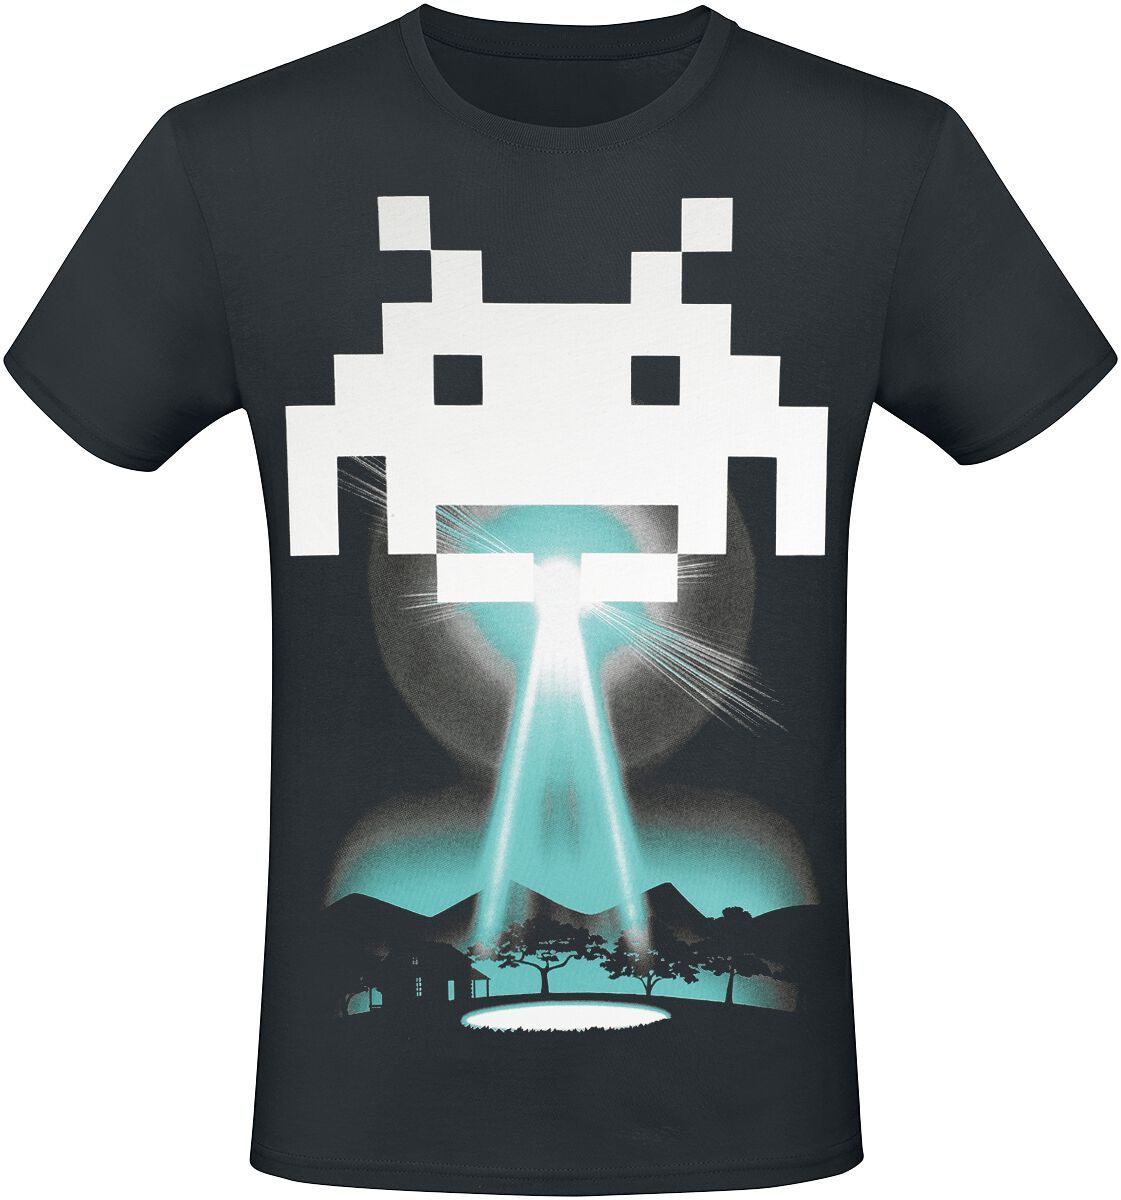 Space Invaders - Gaming T-Shirt - Beam Me Up Alien - XS bis 3XL - für Männer - Größe L - schwarz  - EMP exklusives Merchandise! von Space Invaders